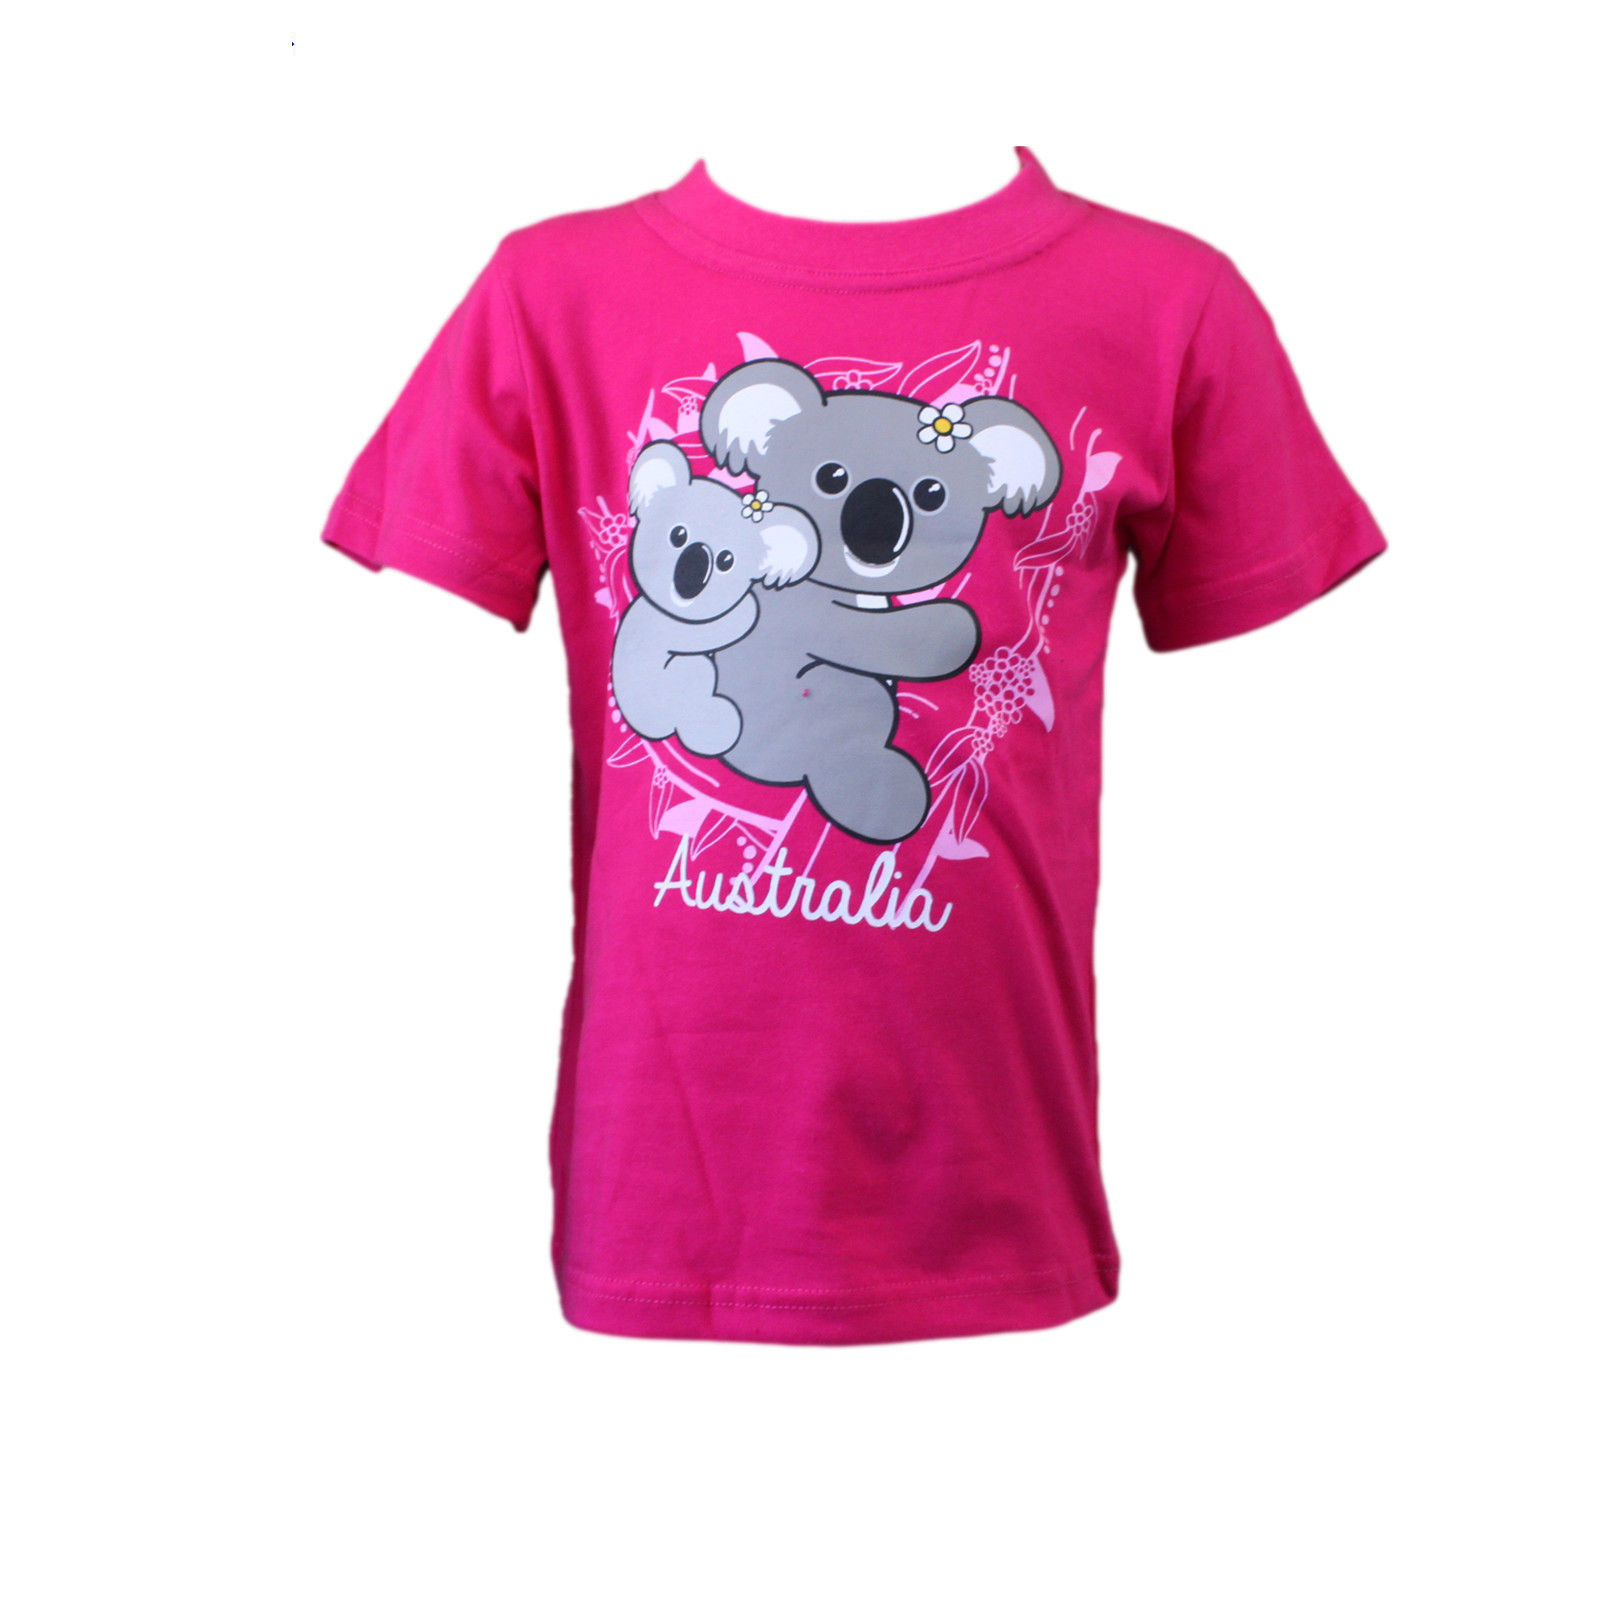 Kids Girls Shirt Australia Australian Day Souvenir 100% Cotton- Koala w Baby | eBay